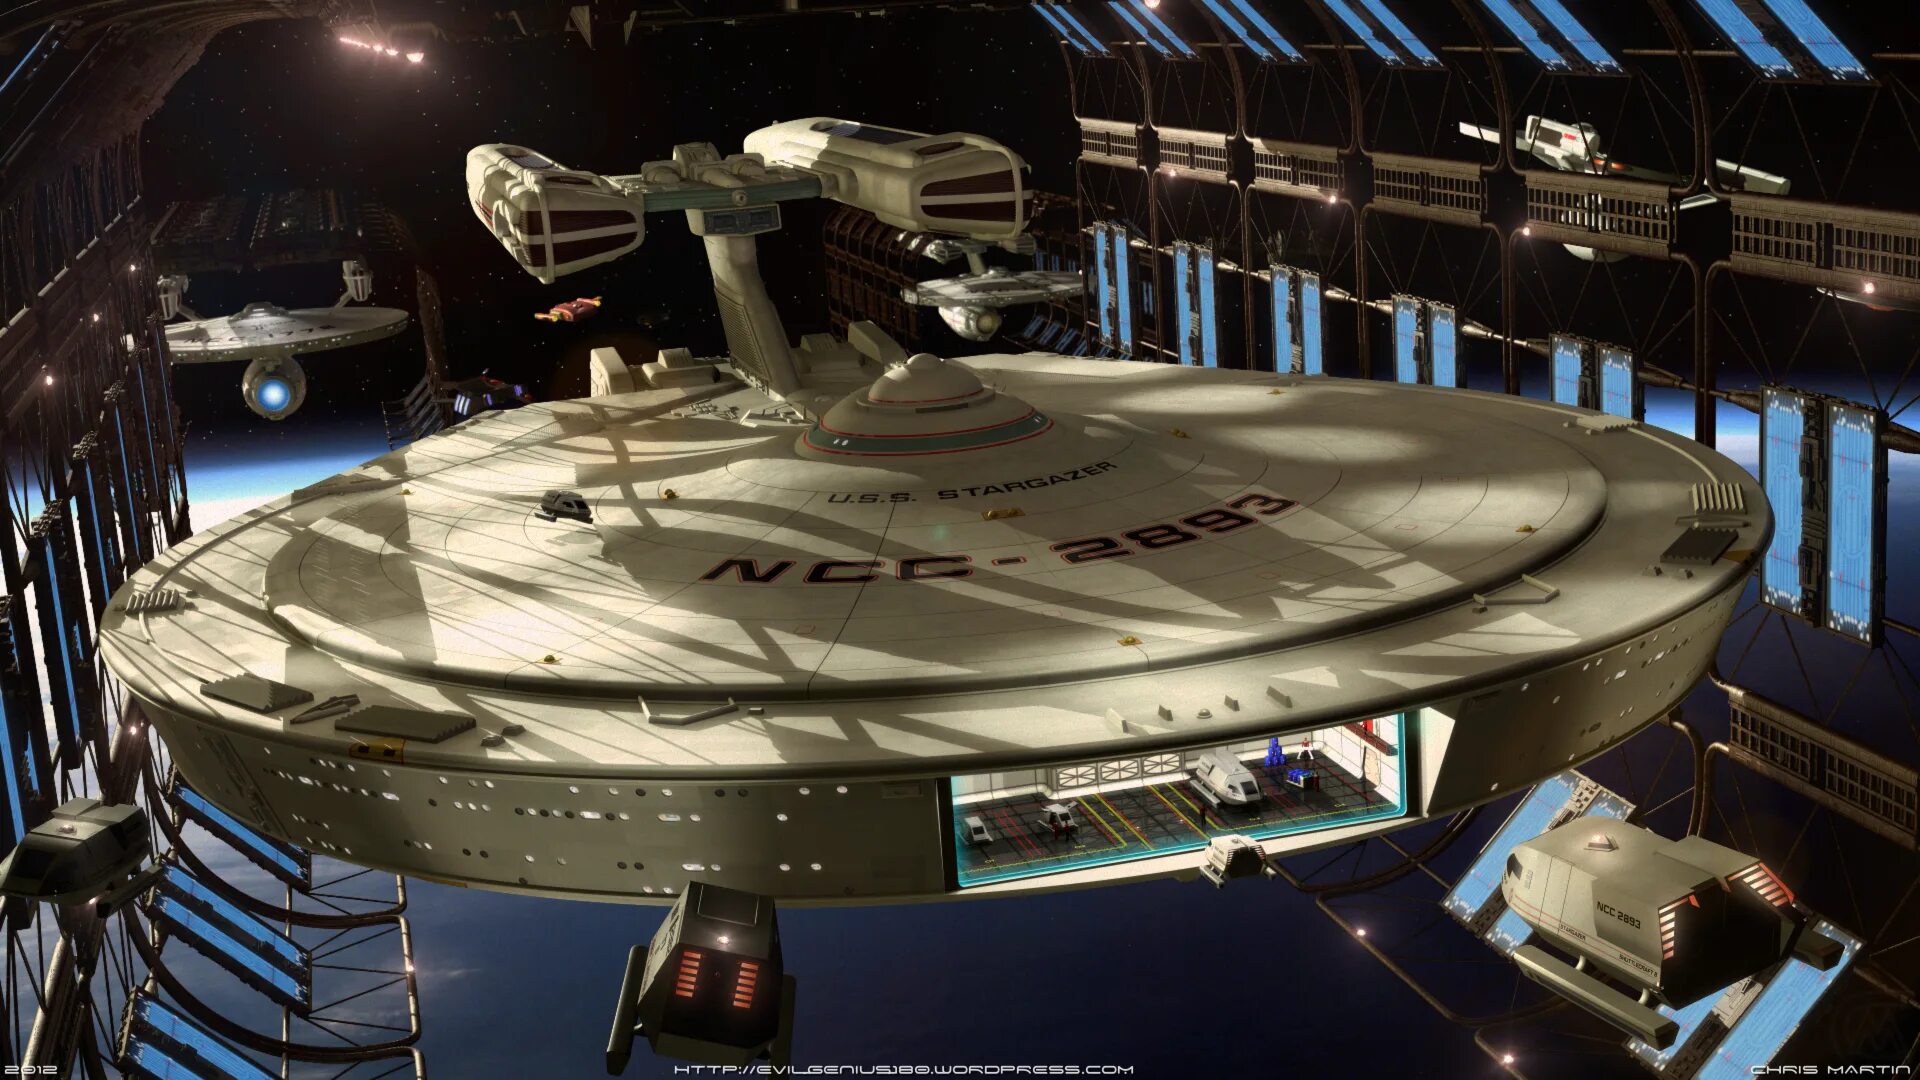 Название первого корабля в космосе. Enterprise Star Trek корабль. USS Старгейзер. USS Enterprise космический корабль.